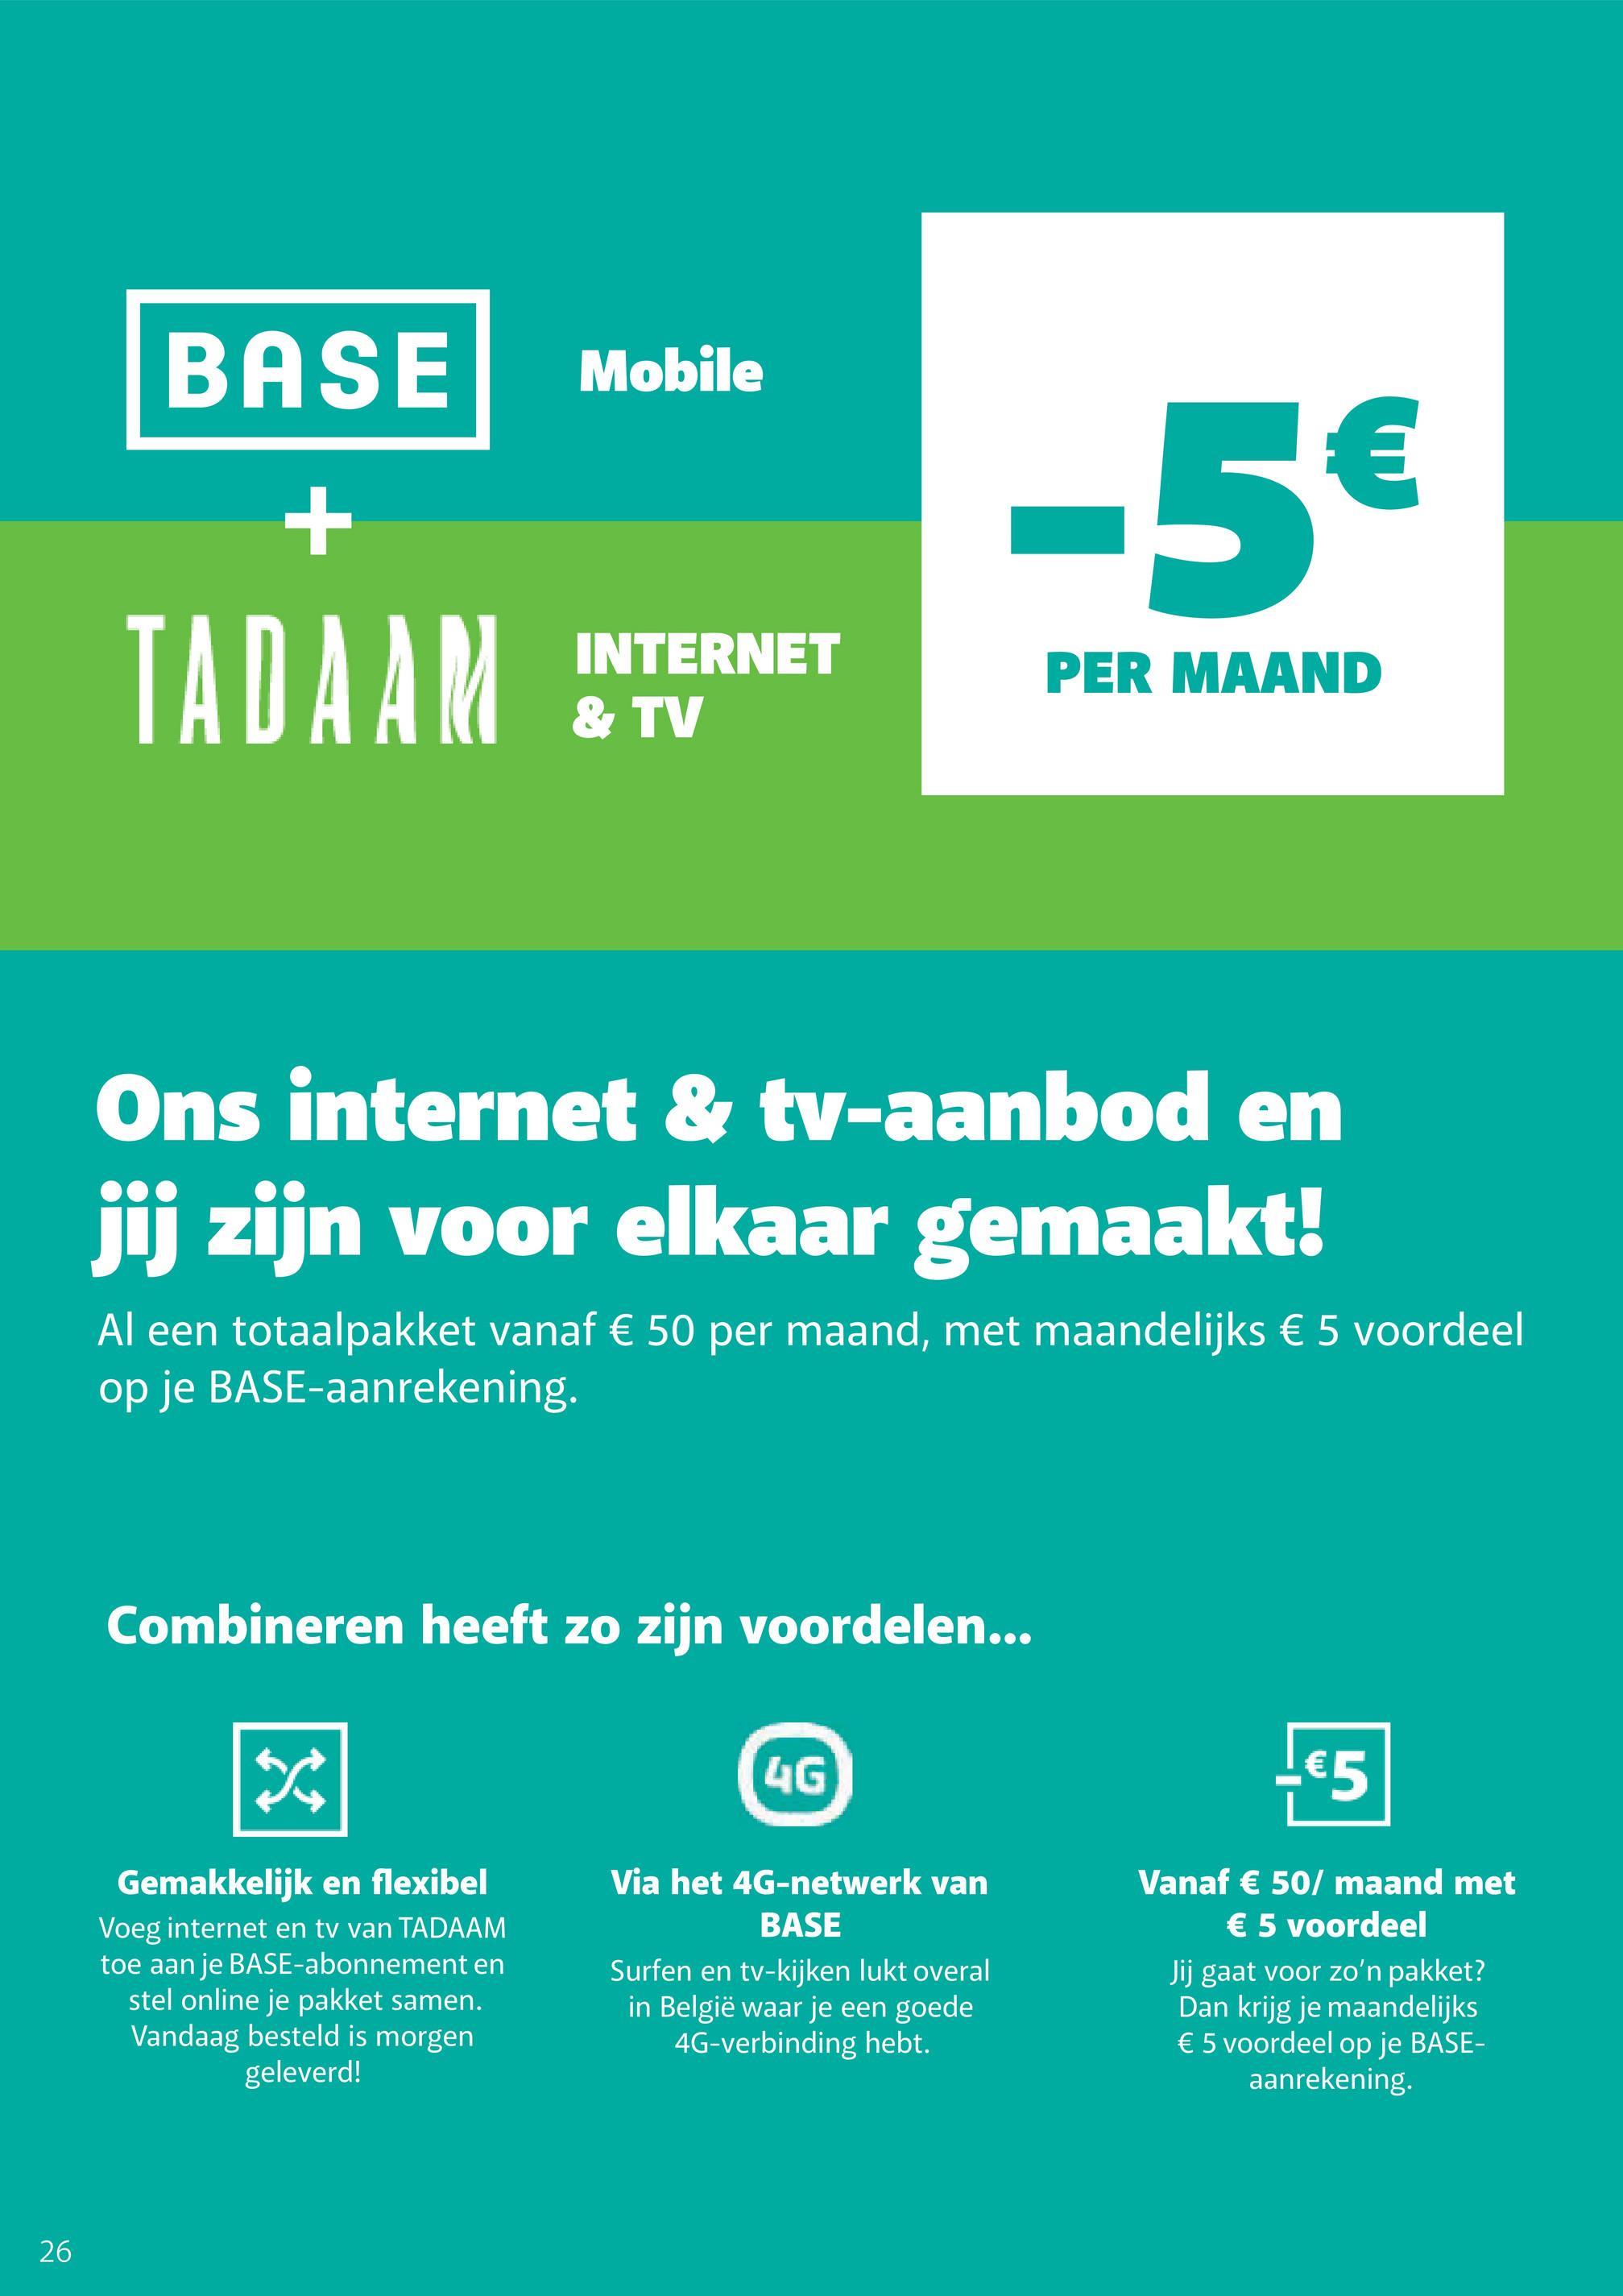 26
BASE Mobile
+
-5€
TADAAM
INTERNET
& TV
PER MAAND
Ons internet & tv-aanbod en
jij zijn voor elkaar gemaakt!
Al een totaalpakket vanaf € 50 per maand, met maandelijks € 5 voordeel
op je BASE-aanrekening.
Combineren heeft zo zijn voordelen...
X
4G
-€5
Via het 4G-netwerk van
BASE
Vanaf € 50/ maand met
€ 5 voordeel
Gemakkelijk en flexibel
Voeg internet en tv van TADAAM
toe aan je BASE-abonnement en
stel online je pakket samen.
Vandaag besteld is morgen
geleverd!
Surfen en tv-kijken lukt overal
in België waar je een goede
4G-verbinding hebt.
Jij gaat voor zo'n pakket?
Dan krijg je maandelijks
€ 5 voordeel op je BASE-
aanrekening.